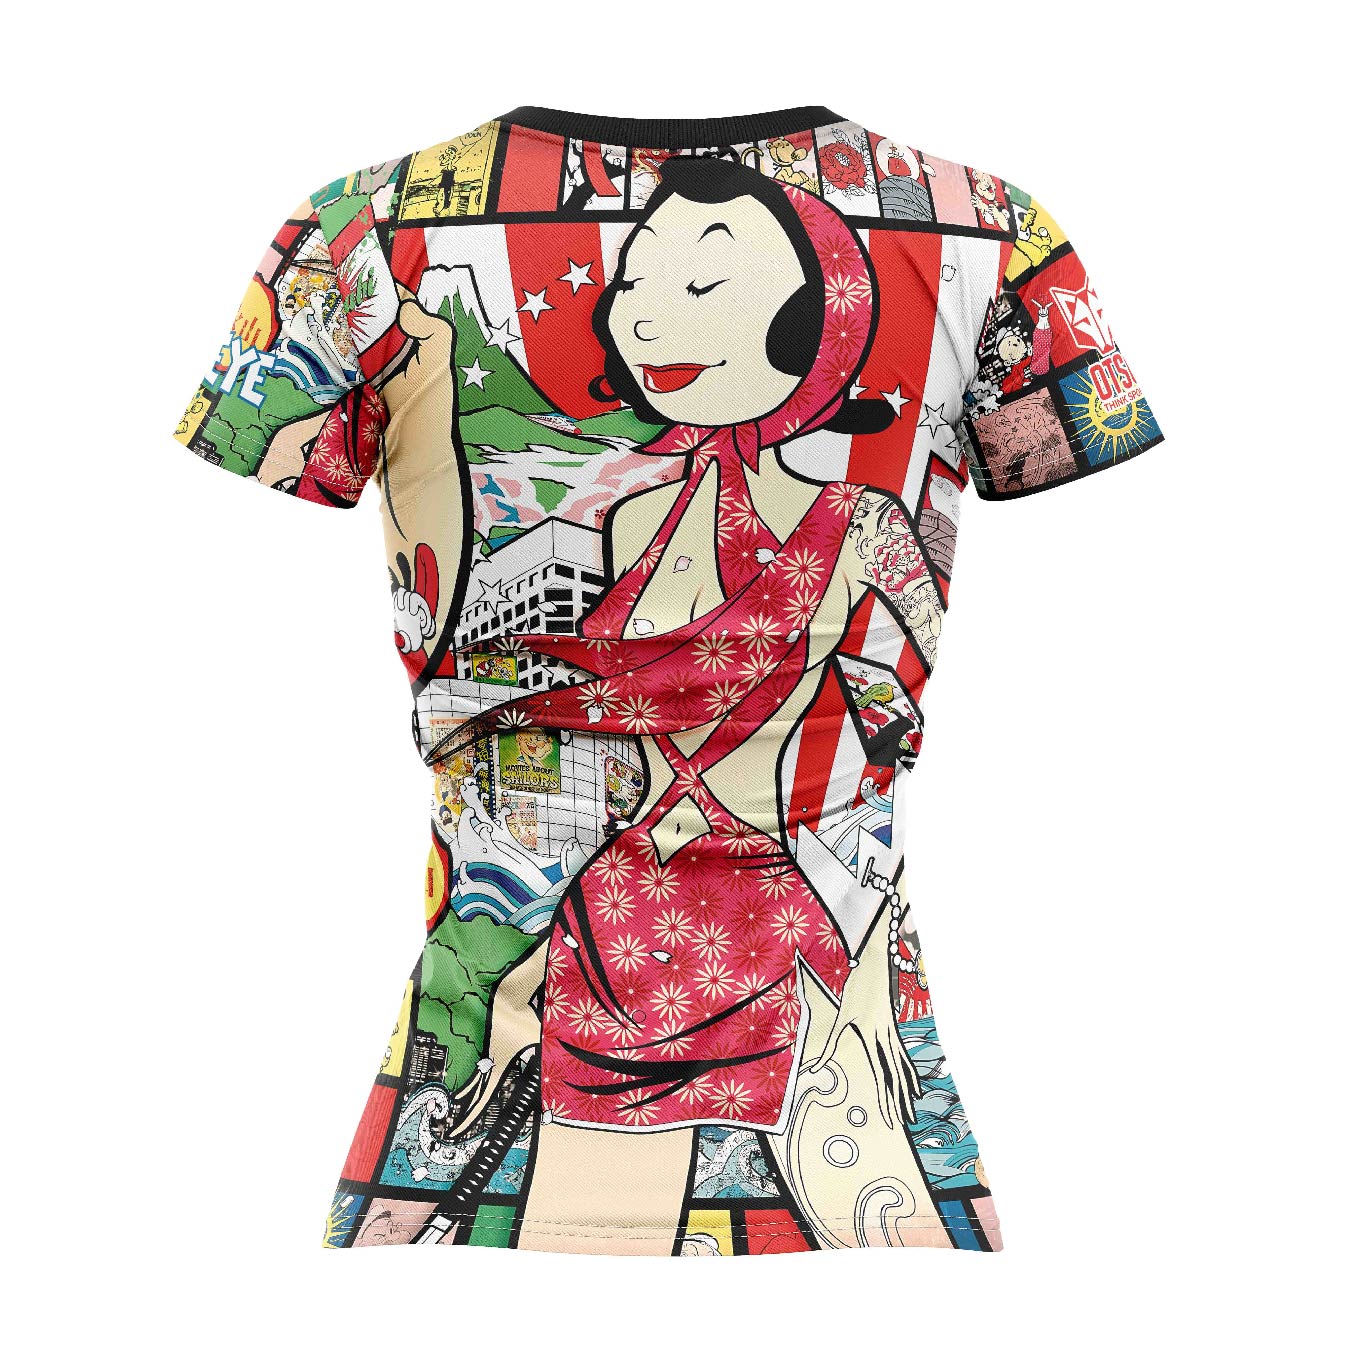 Camiseta manga corta mujer - Popeye Art Show